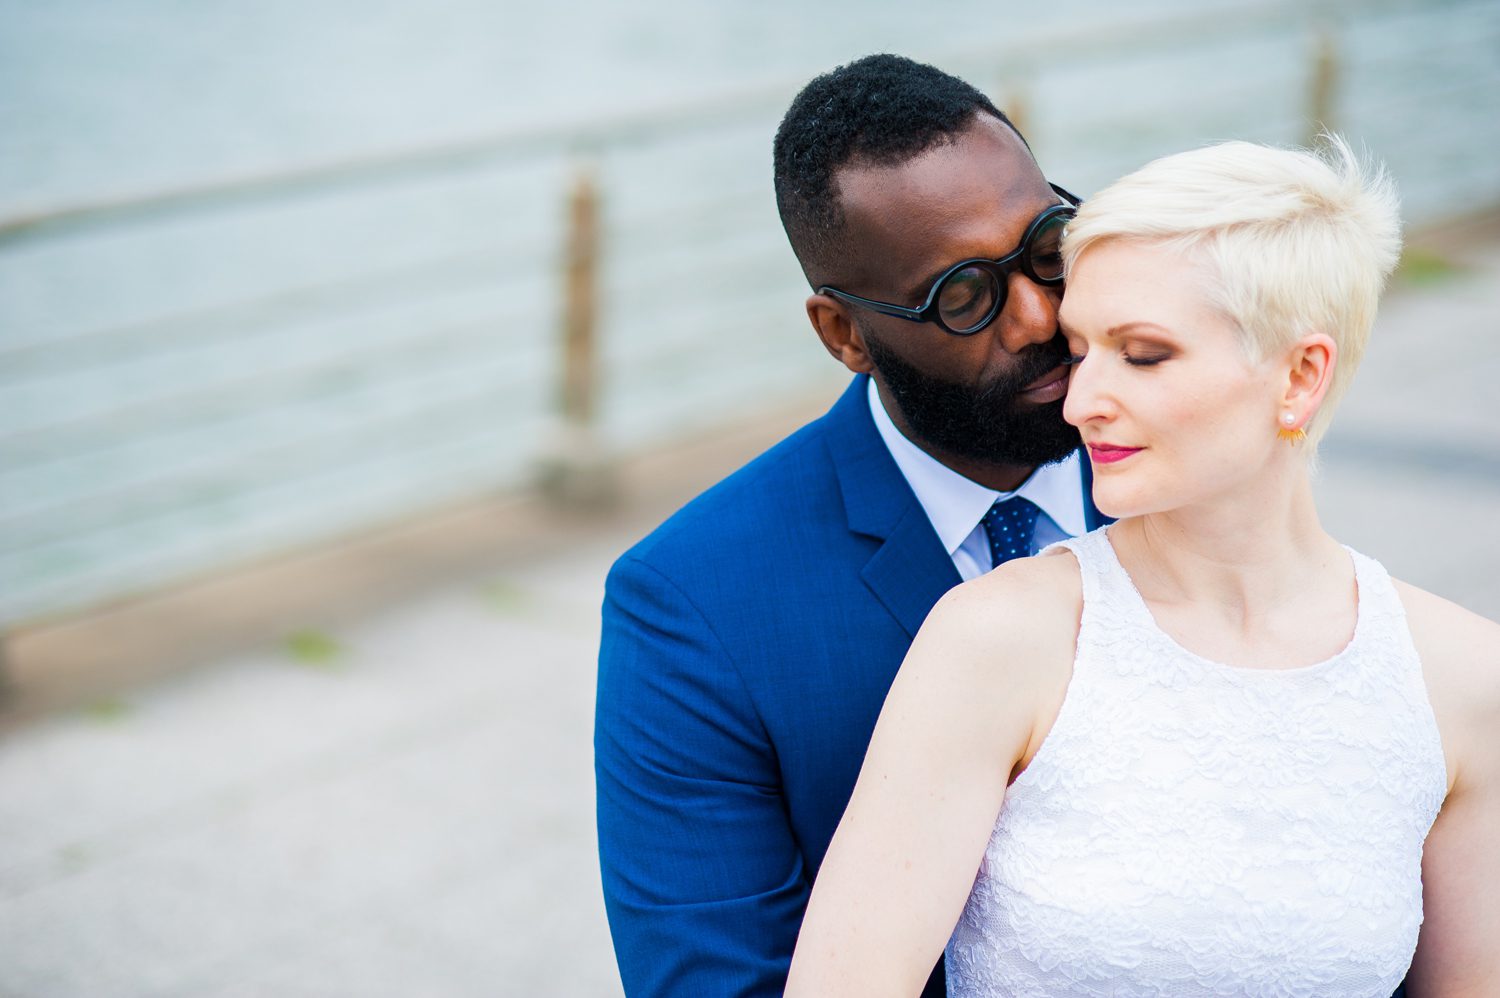 Interracial Wedding Photos